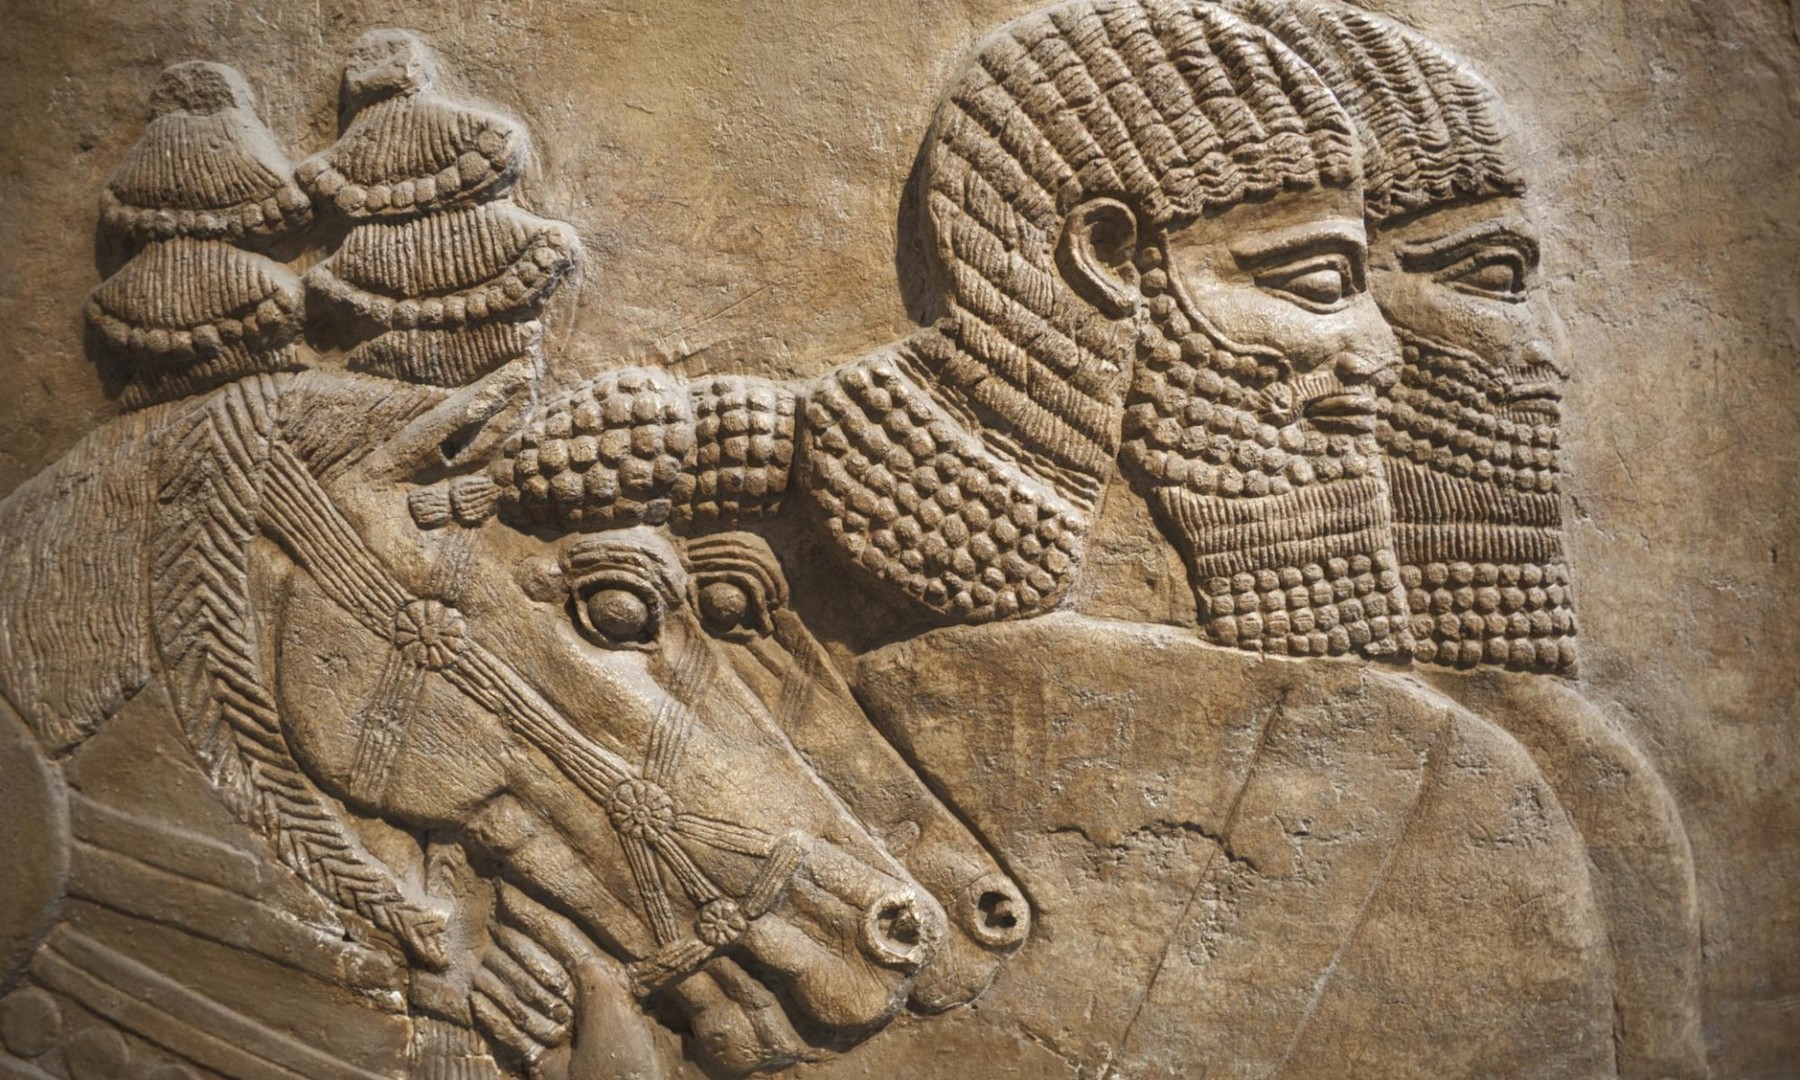 Λεπτομέρεια από ασσυριακή τοιχογραφία στην πόλη Νίμρουντ, στην οποία απεικονίζονται άλογα και ιππείς βασιλικού ιππικού.